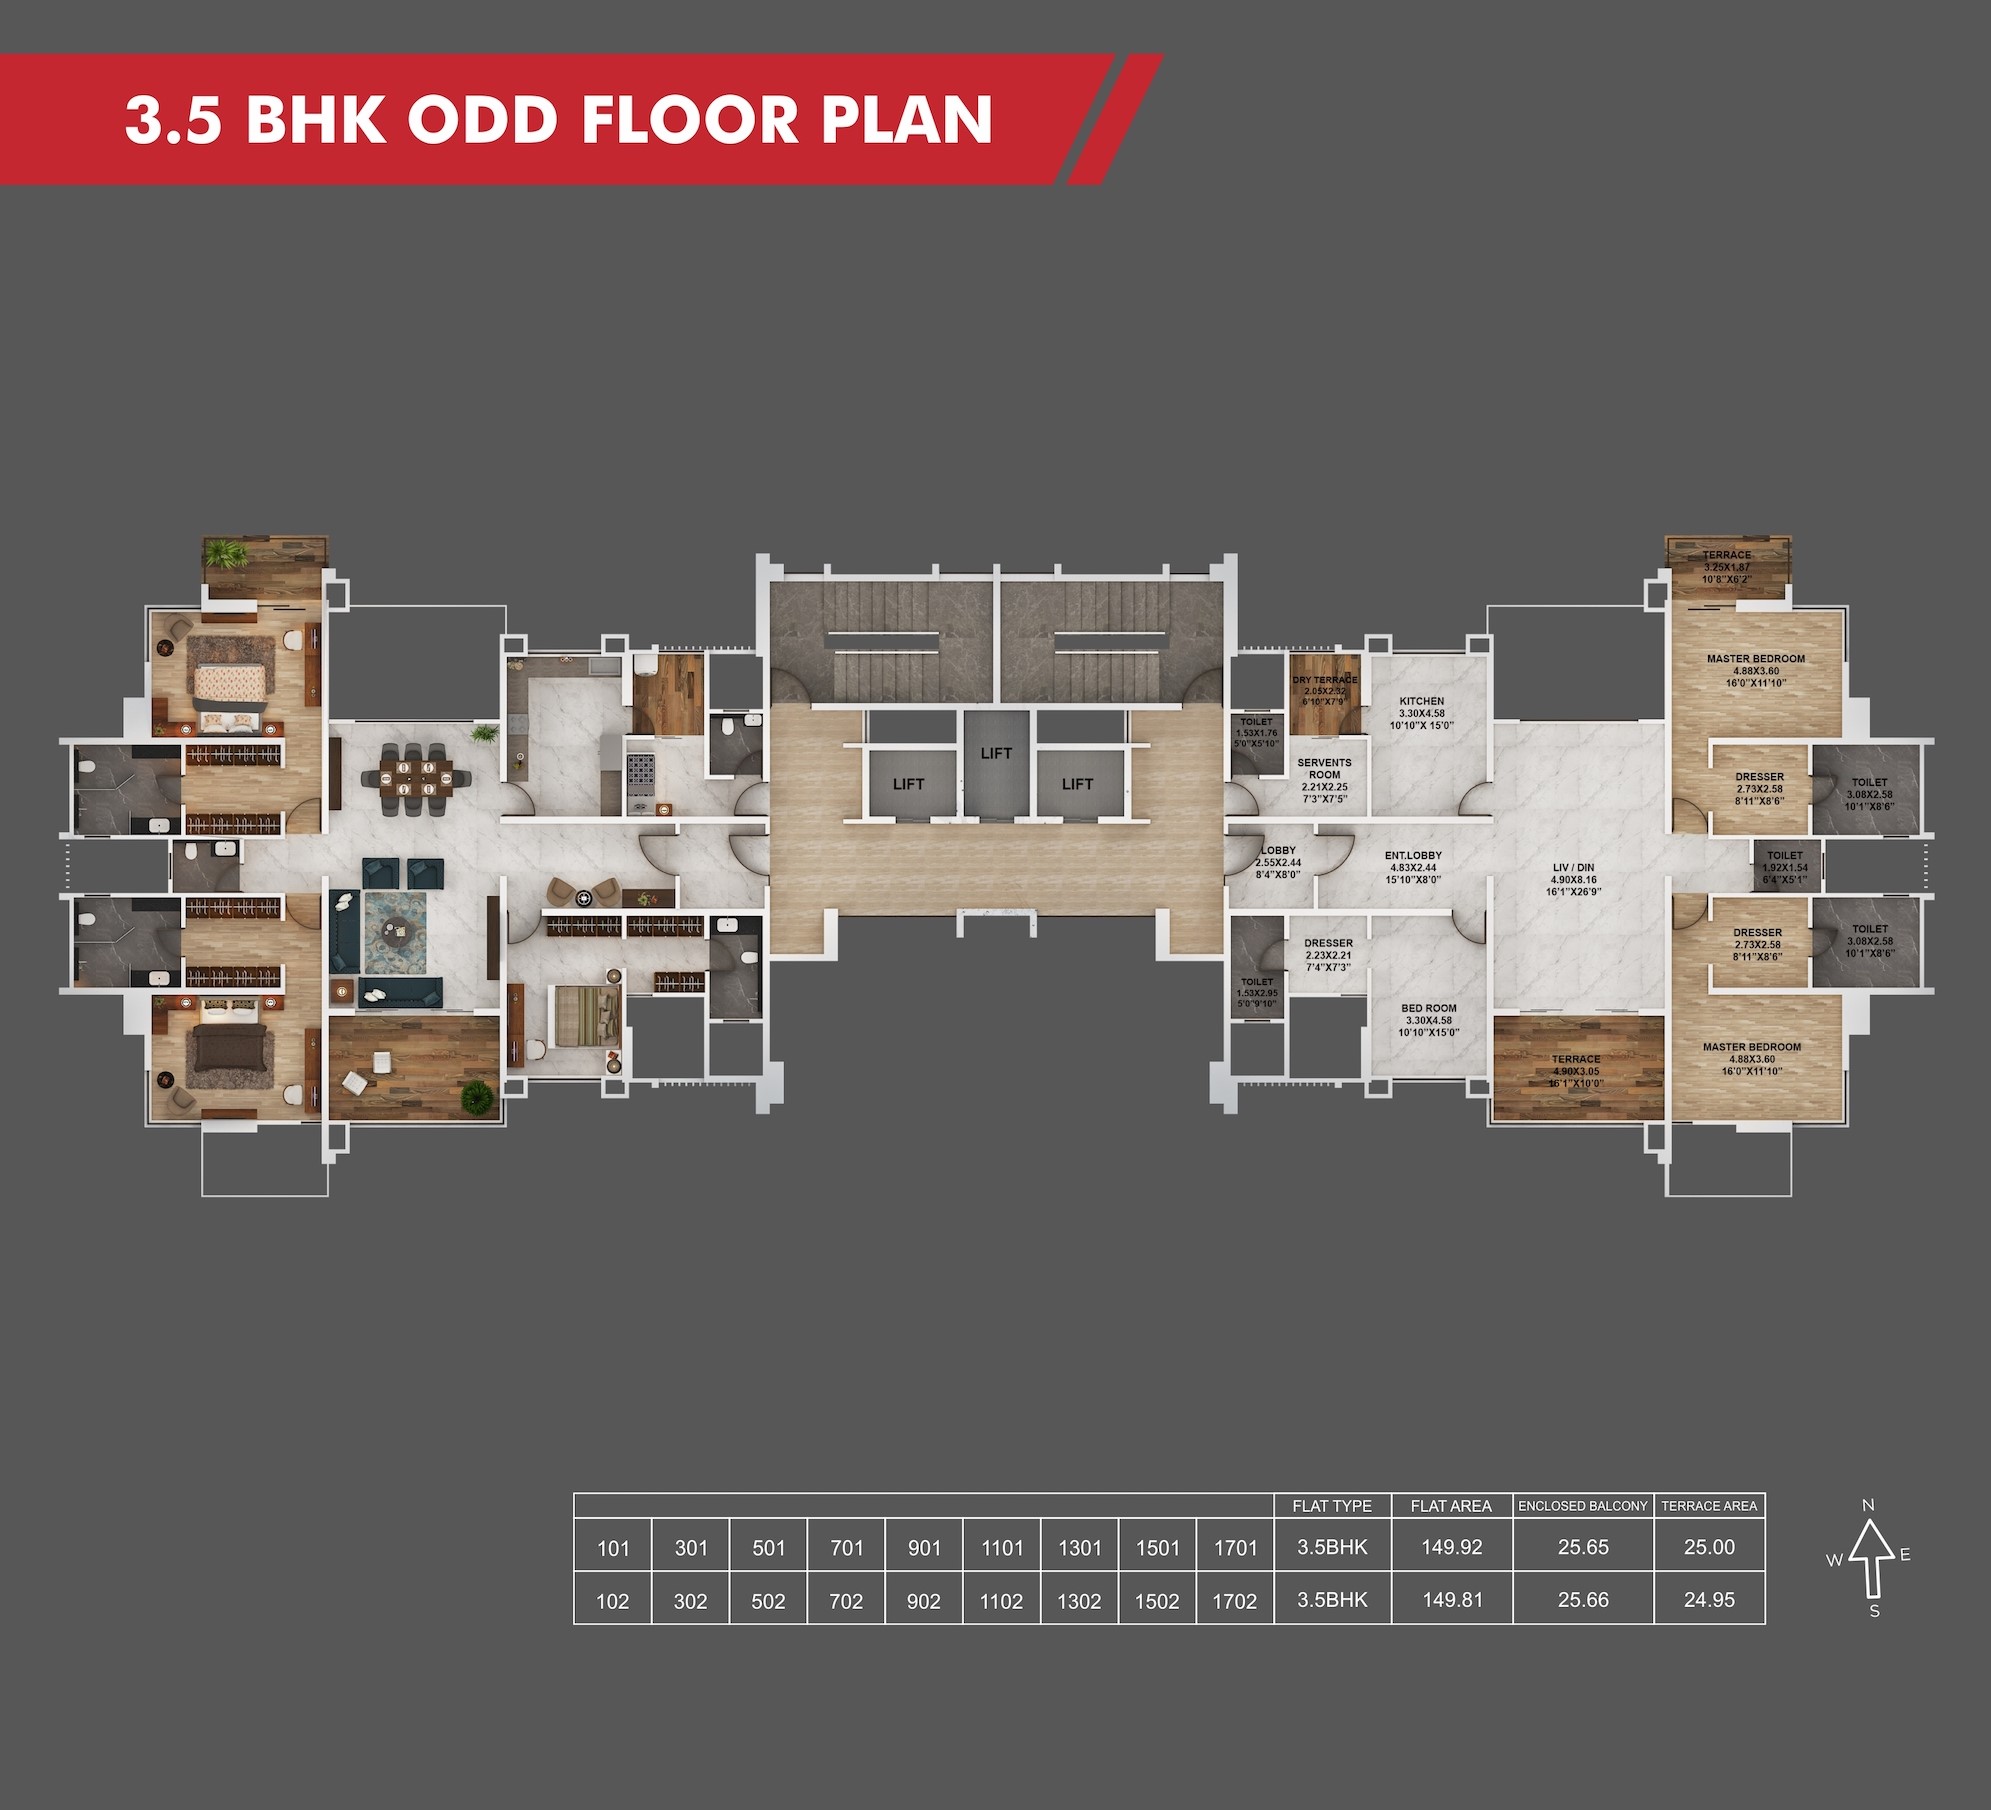 Sanctum 3.5BHK Odd Floor Plan